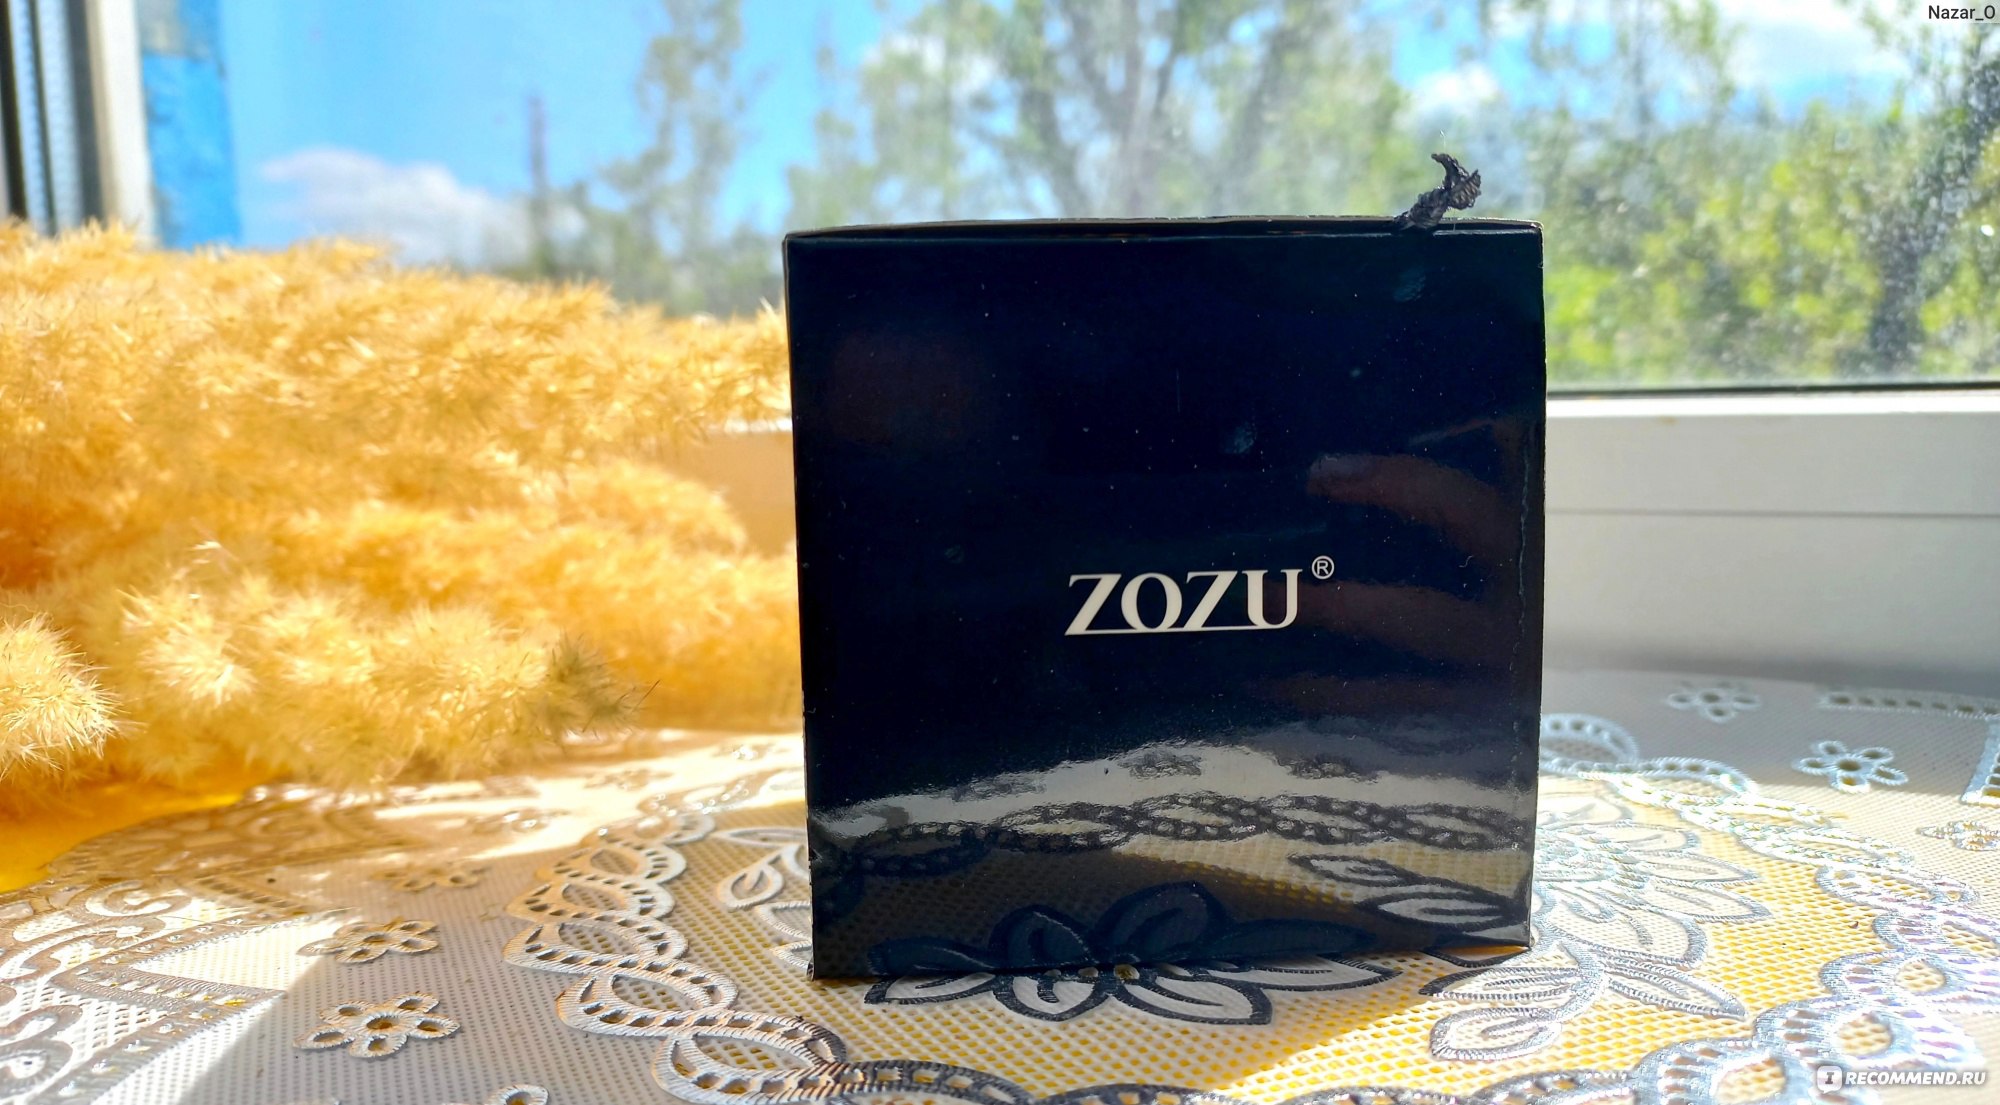 Кушон ZOZU крем / тональное средство с экстрактом авокадо Beautecret фото